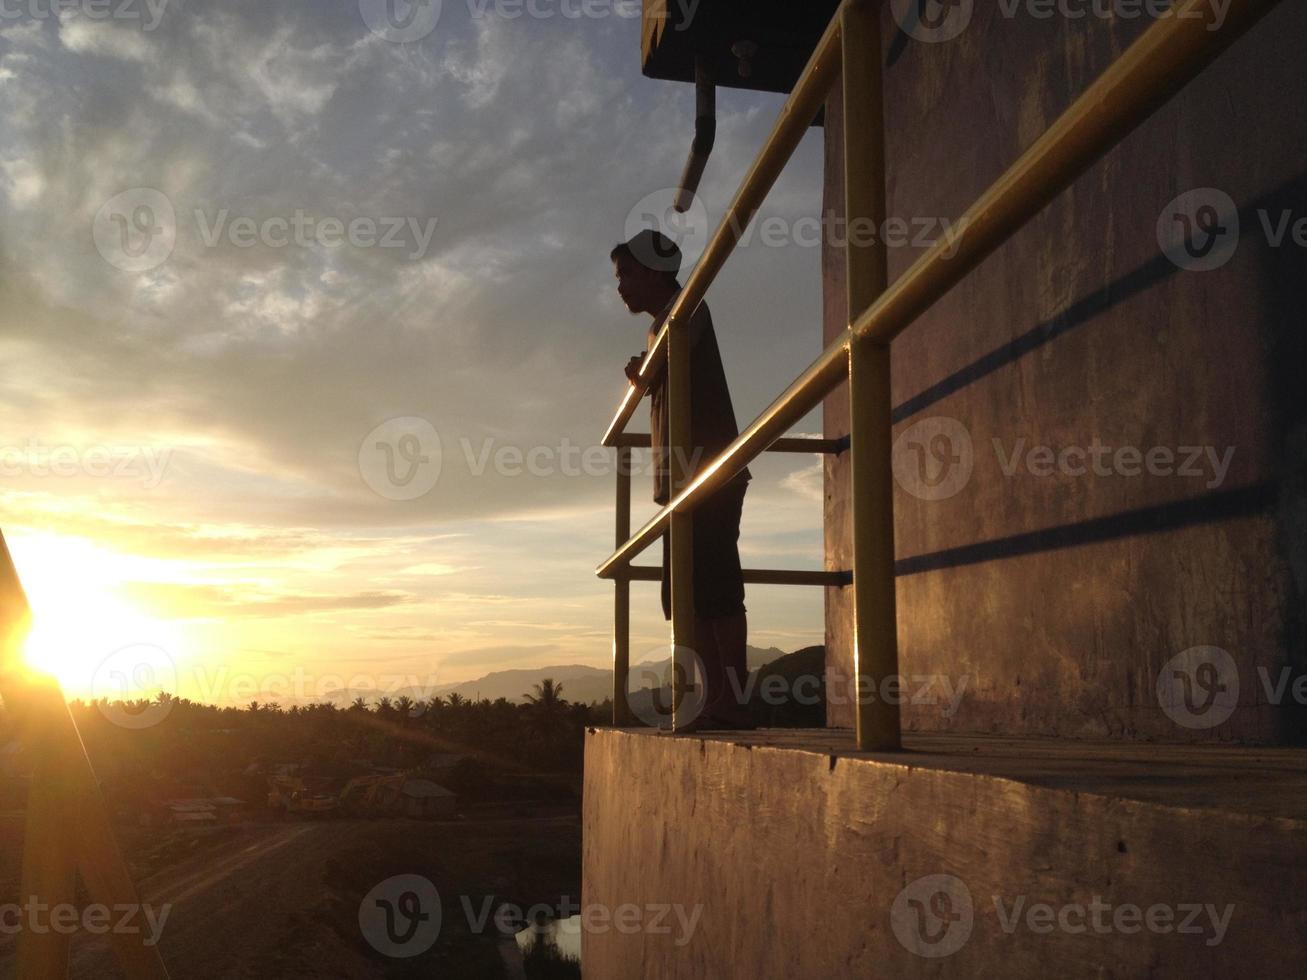 una vista posteriore di un uomo su uno sfondo di cielo arancione foto